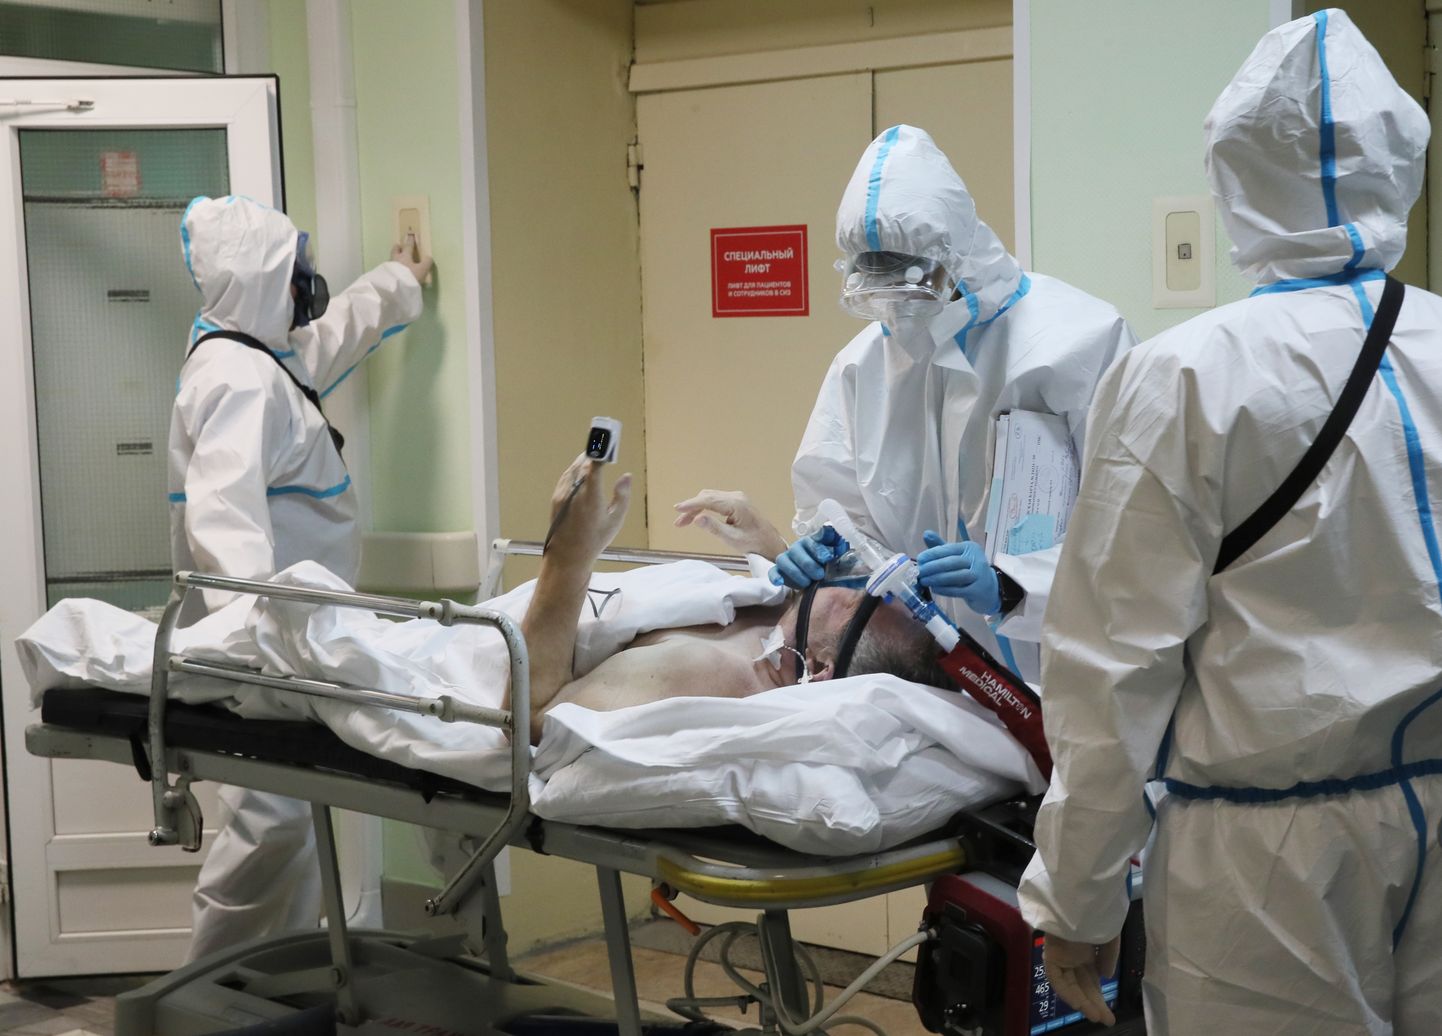 Kaitserõivastes tervishoiutöötaja koroonahaigele hingamisaparaati paigaldamas. Haigla nr 52, Moskvas (7. oktoober 2020)